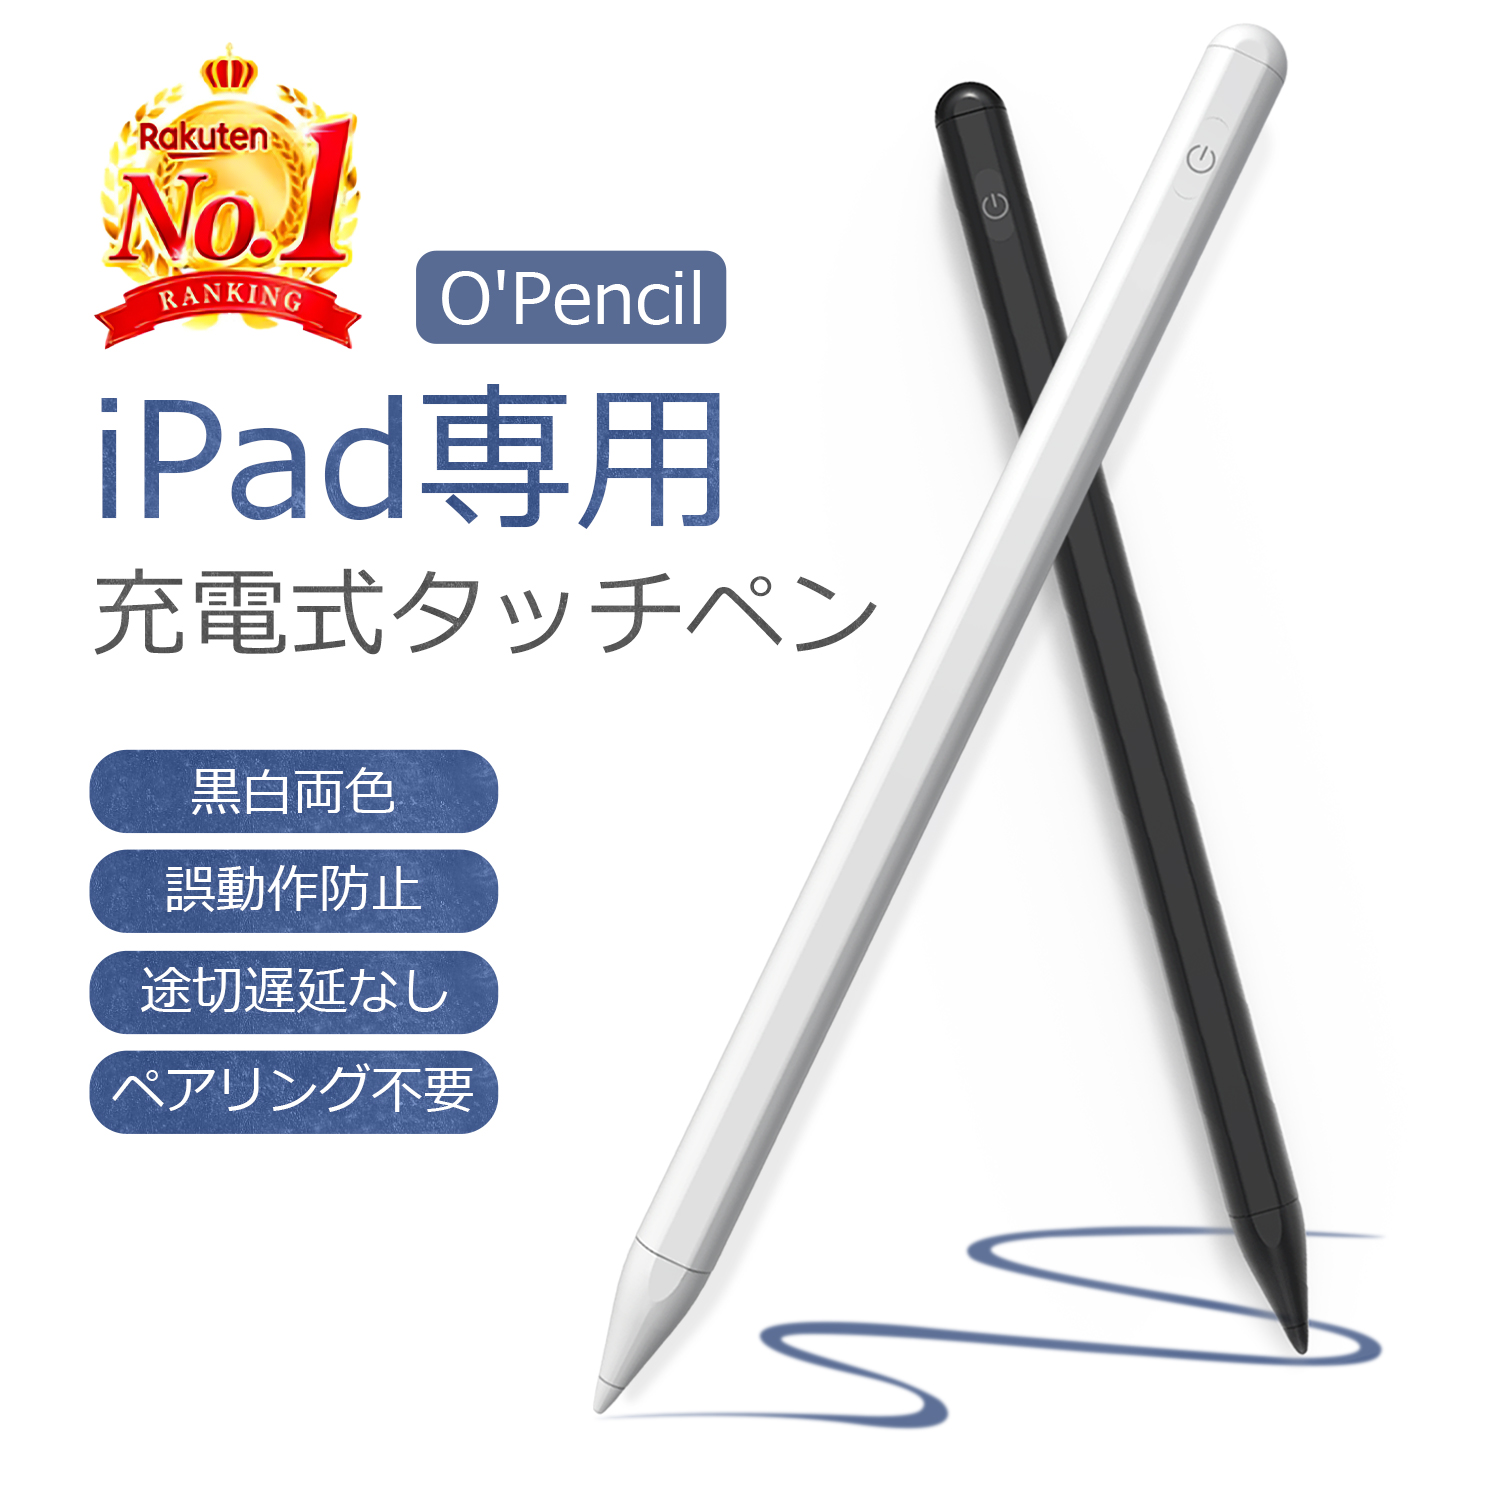 【ポイント最大26倍】【楽天1位】【O'Pencil】タッチペン iPad ペンシル パームリジェクション機能 タブレット スタイラスペン  iPadタッチペン 第9 10世代 第6 8世代 mini6 Air5 mini5 10.9 10.2 iPad Pro12.9 11インチ  軽量/磁気吸着/途切/遅延/誤動作防止 ...